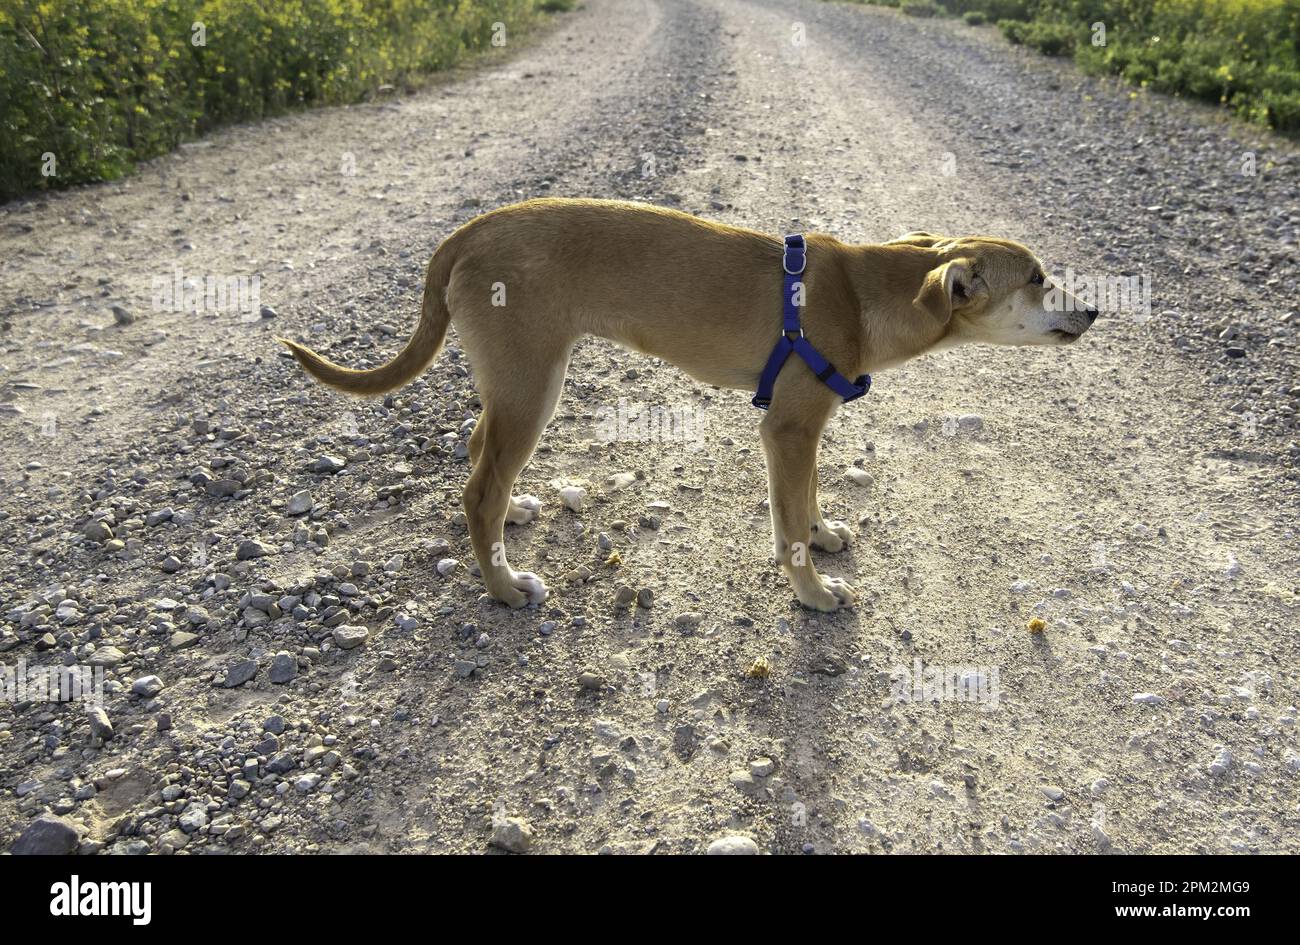 Détail du chien de compagnie sur une promenade dans la nature, animal de compagnie Banque D'Images